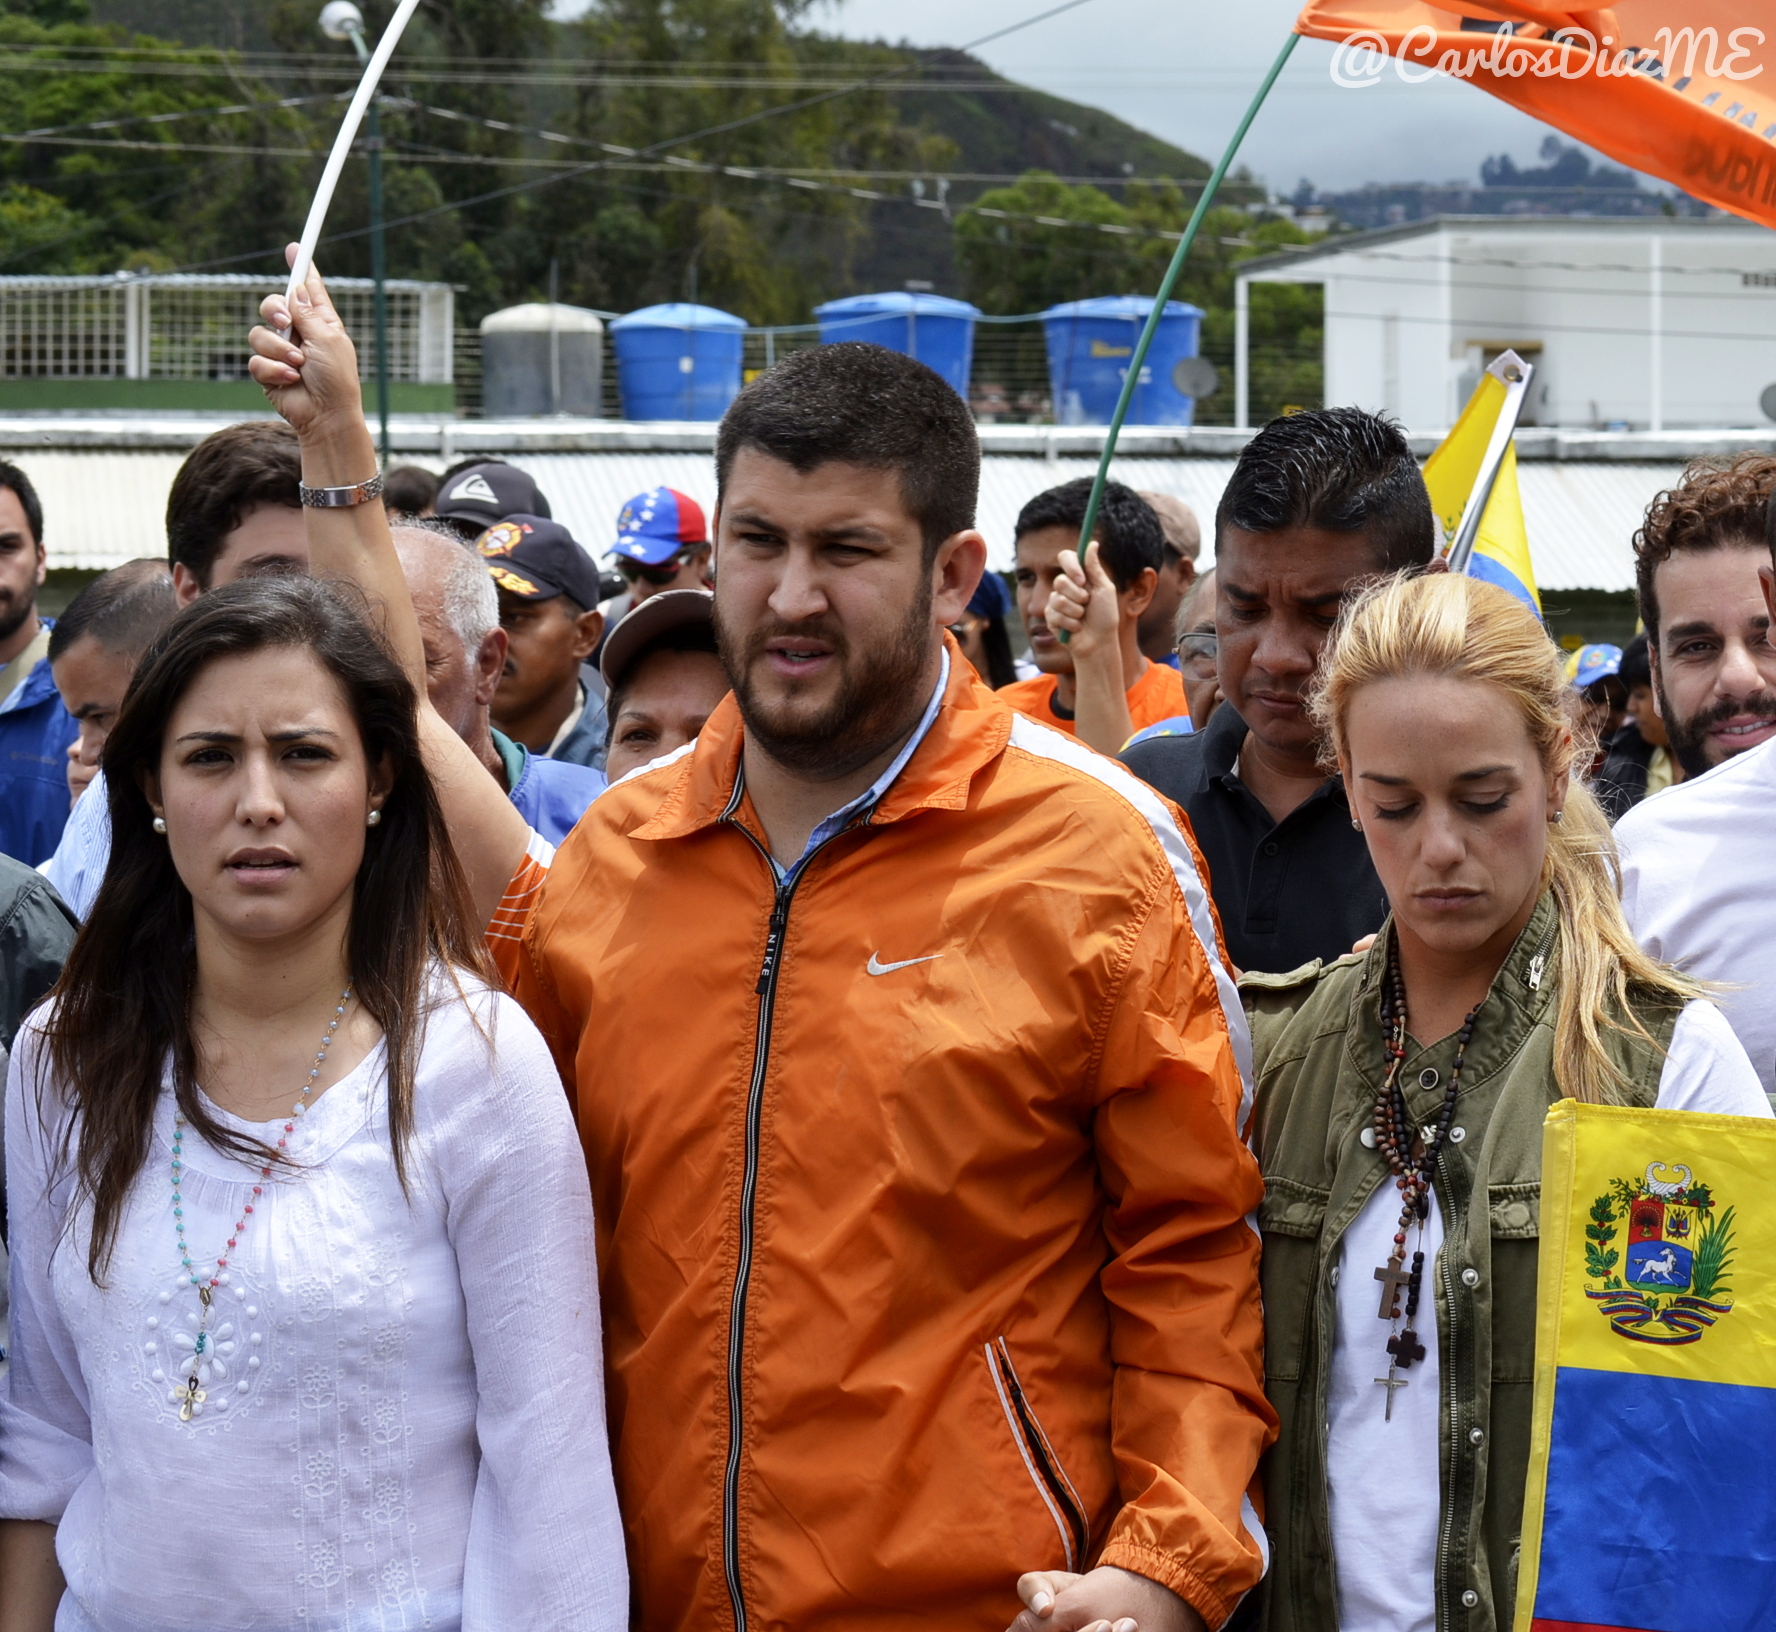 Caravana de visita a presos políticos en Ramo Verde, 26Jul2014 (14566313268).jpg